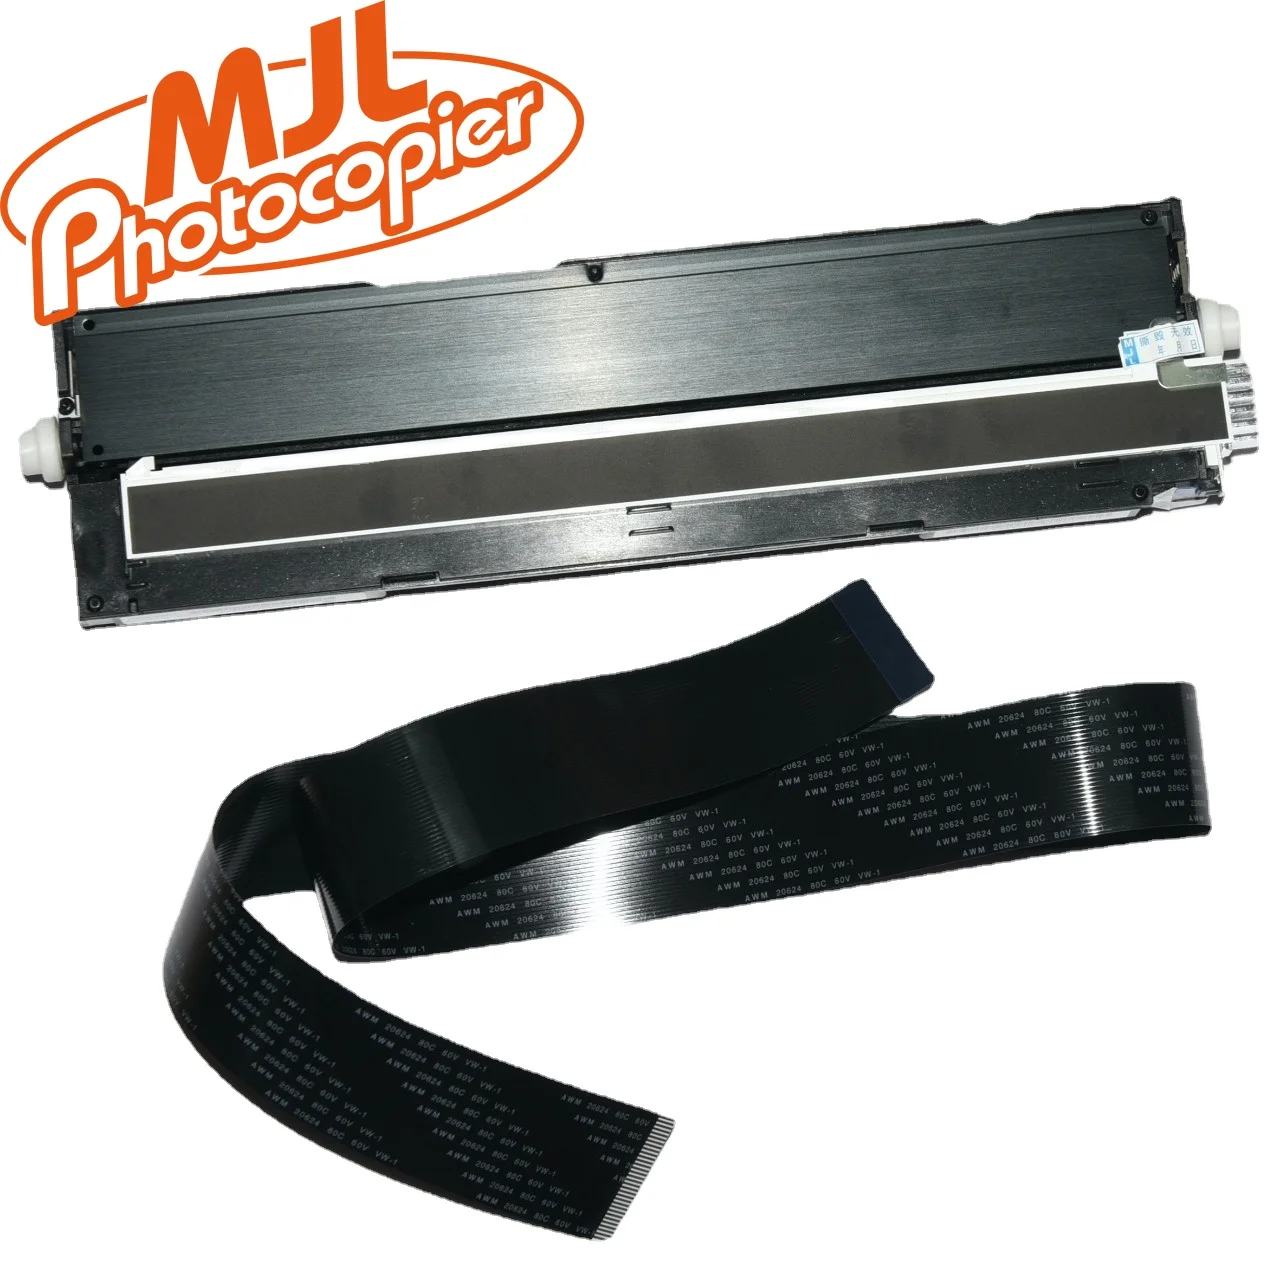 

M525 Scanner Unit with Cable For HP M525DN M630 M680 M575 525 630 680 575 X585 Scanner Head CC350-60011 Original New